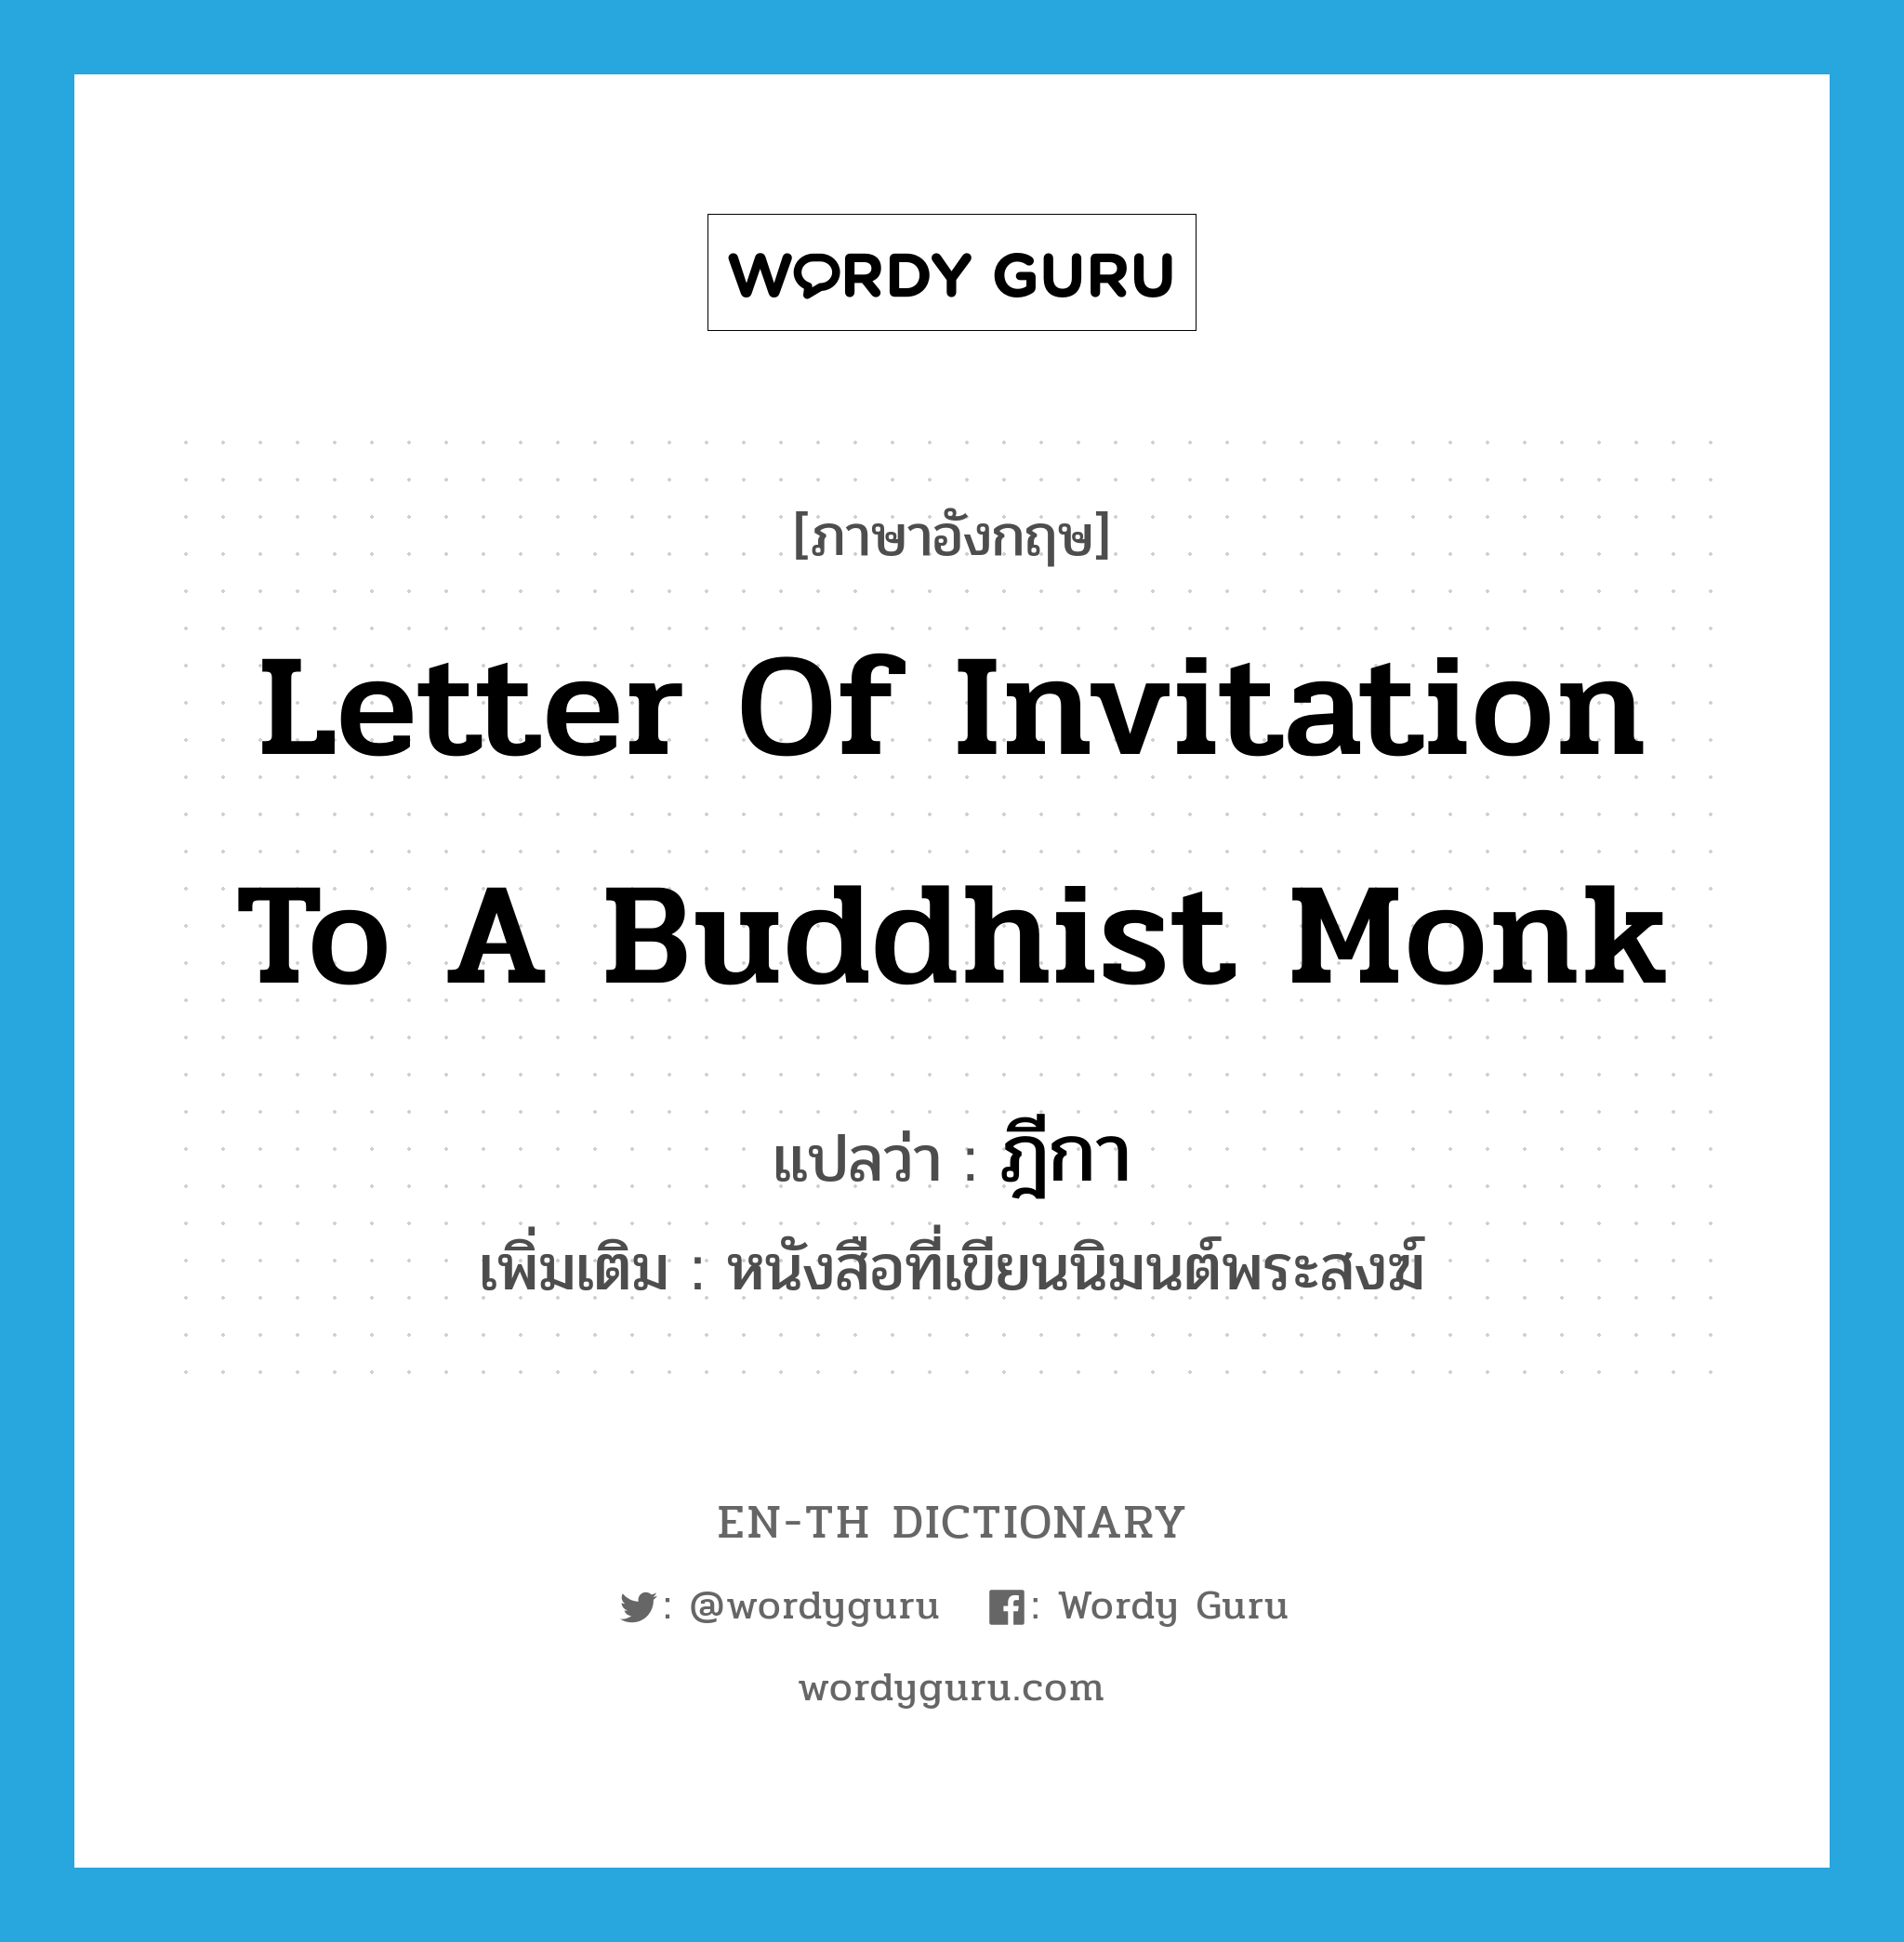 ฎีกา ภาษาอังกฤษ?, คำศัพท์ภาษาอังกฤษ ฎีกา แปลว่า letter of invitation to a Buddhist monk ประเภท N เพิ่มเติม หนังสือที่เขียนนิมนต์พระสงฆ์ หมวด N